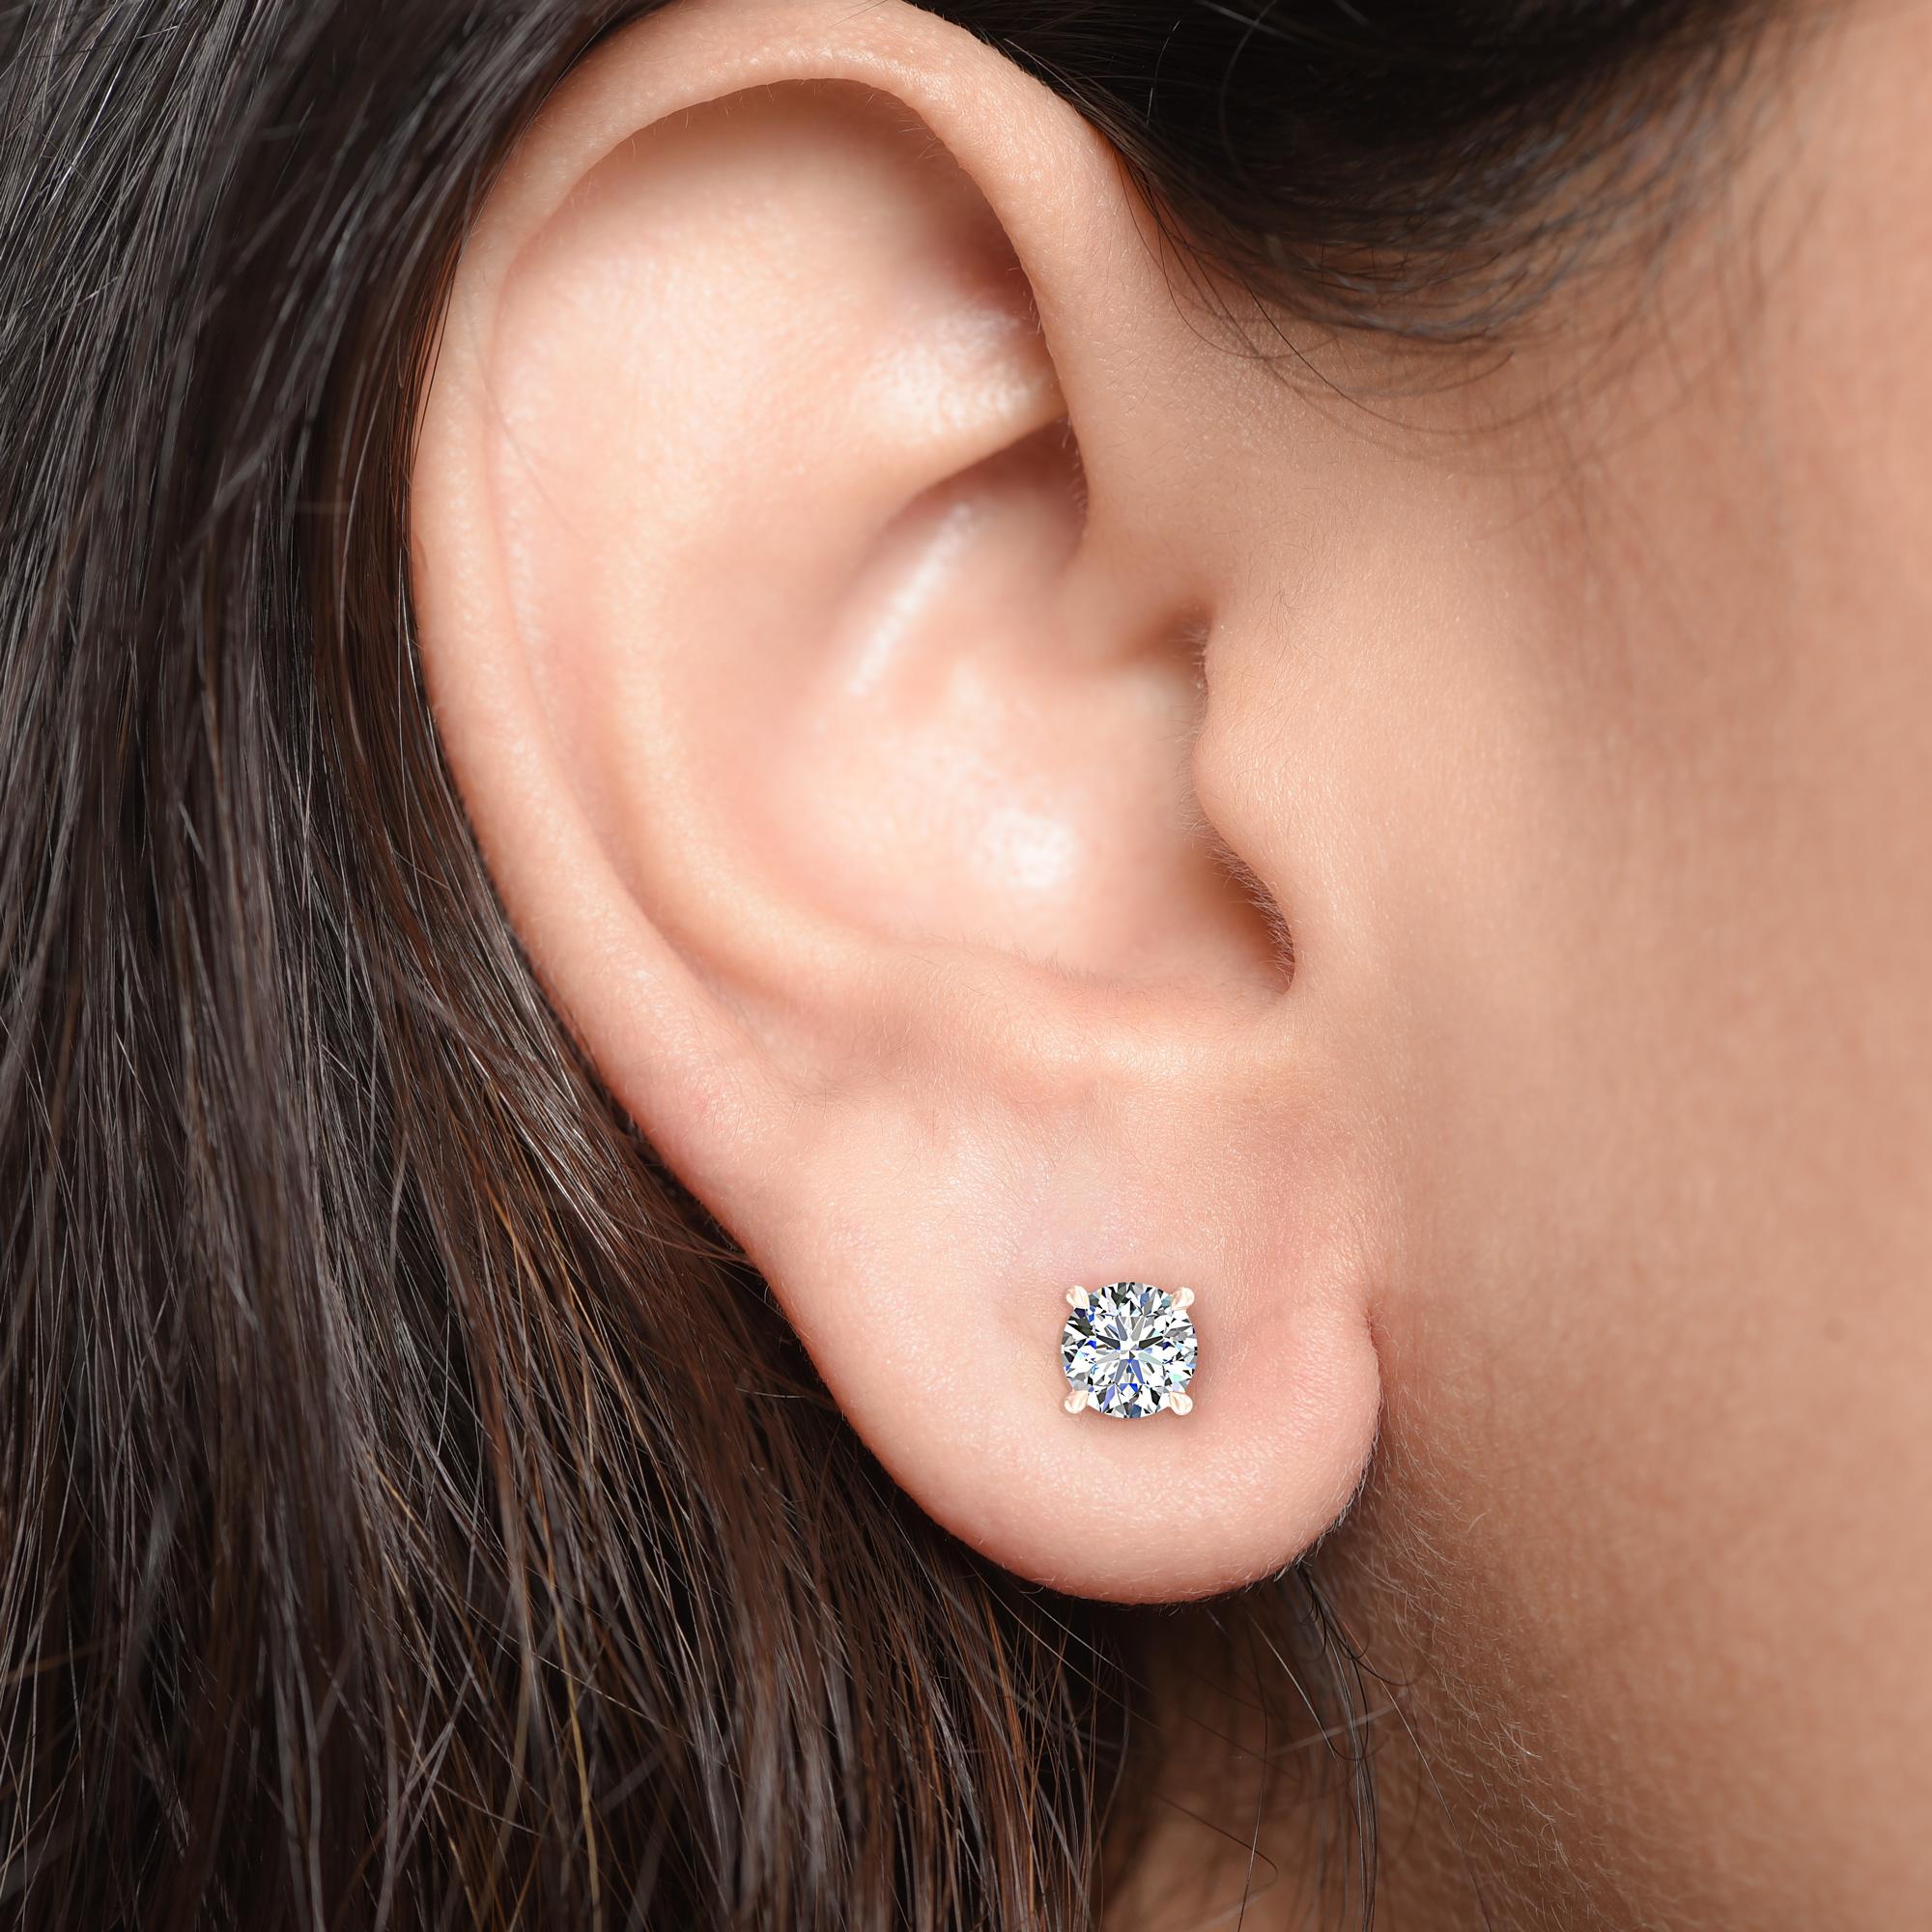 Diese klassischen, GIA-zertifizierten Diamantohrstecker präsentieren ein Paar Diamanten mit einem Gesamtgewicht von 0,80 Karat. Die aus 18-karätigem Roségold gefertigten vierzackigen Ohrringe sind auch in Weiß- und Gelbgold erhältlich.

Perfekt zum